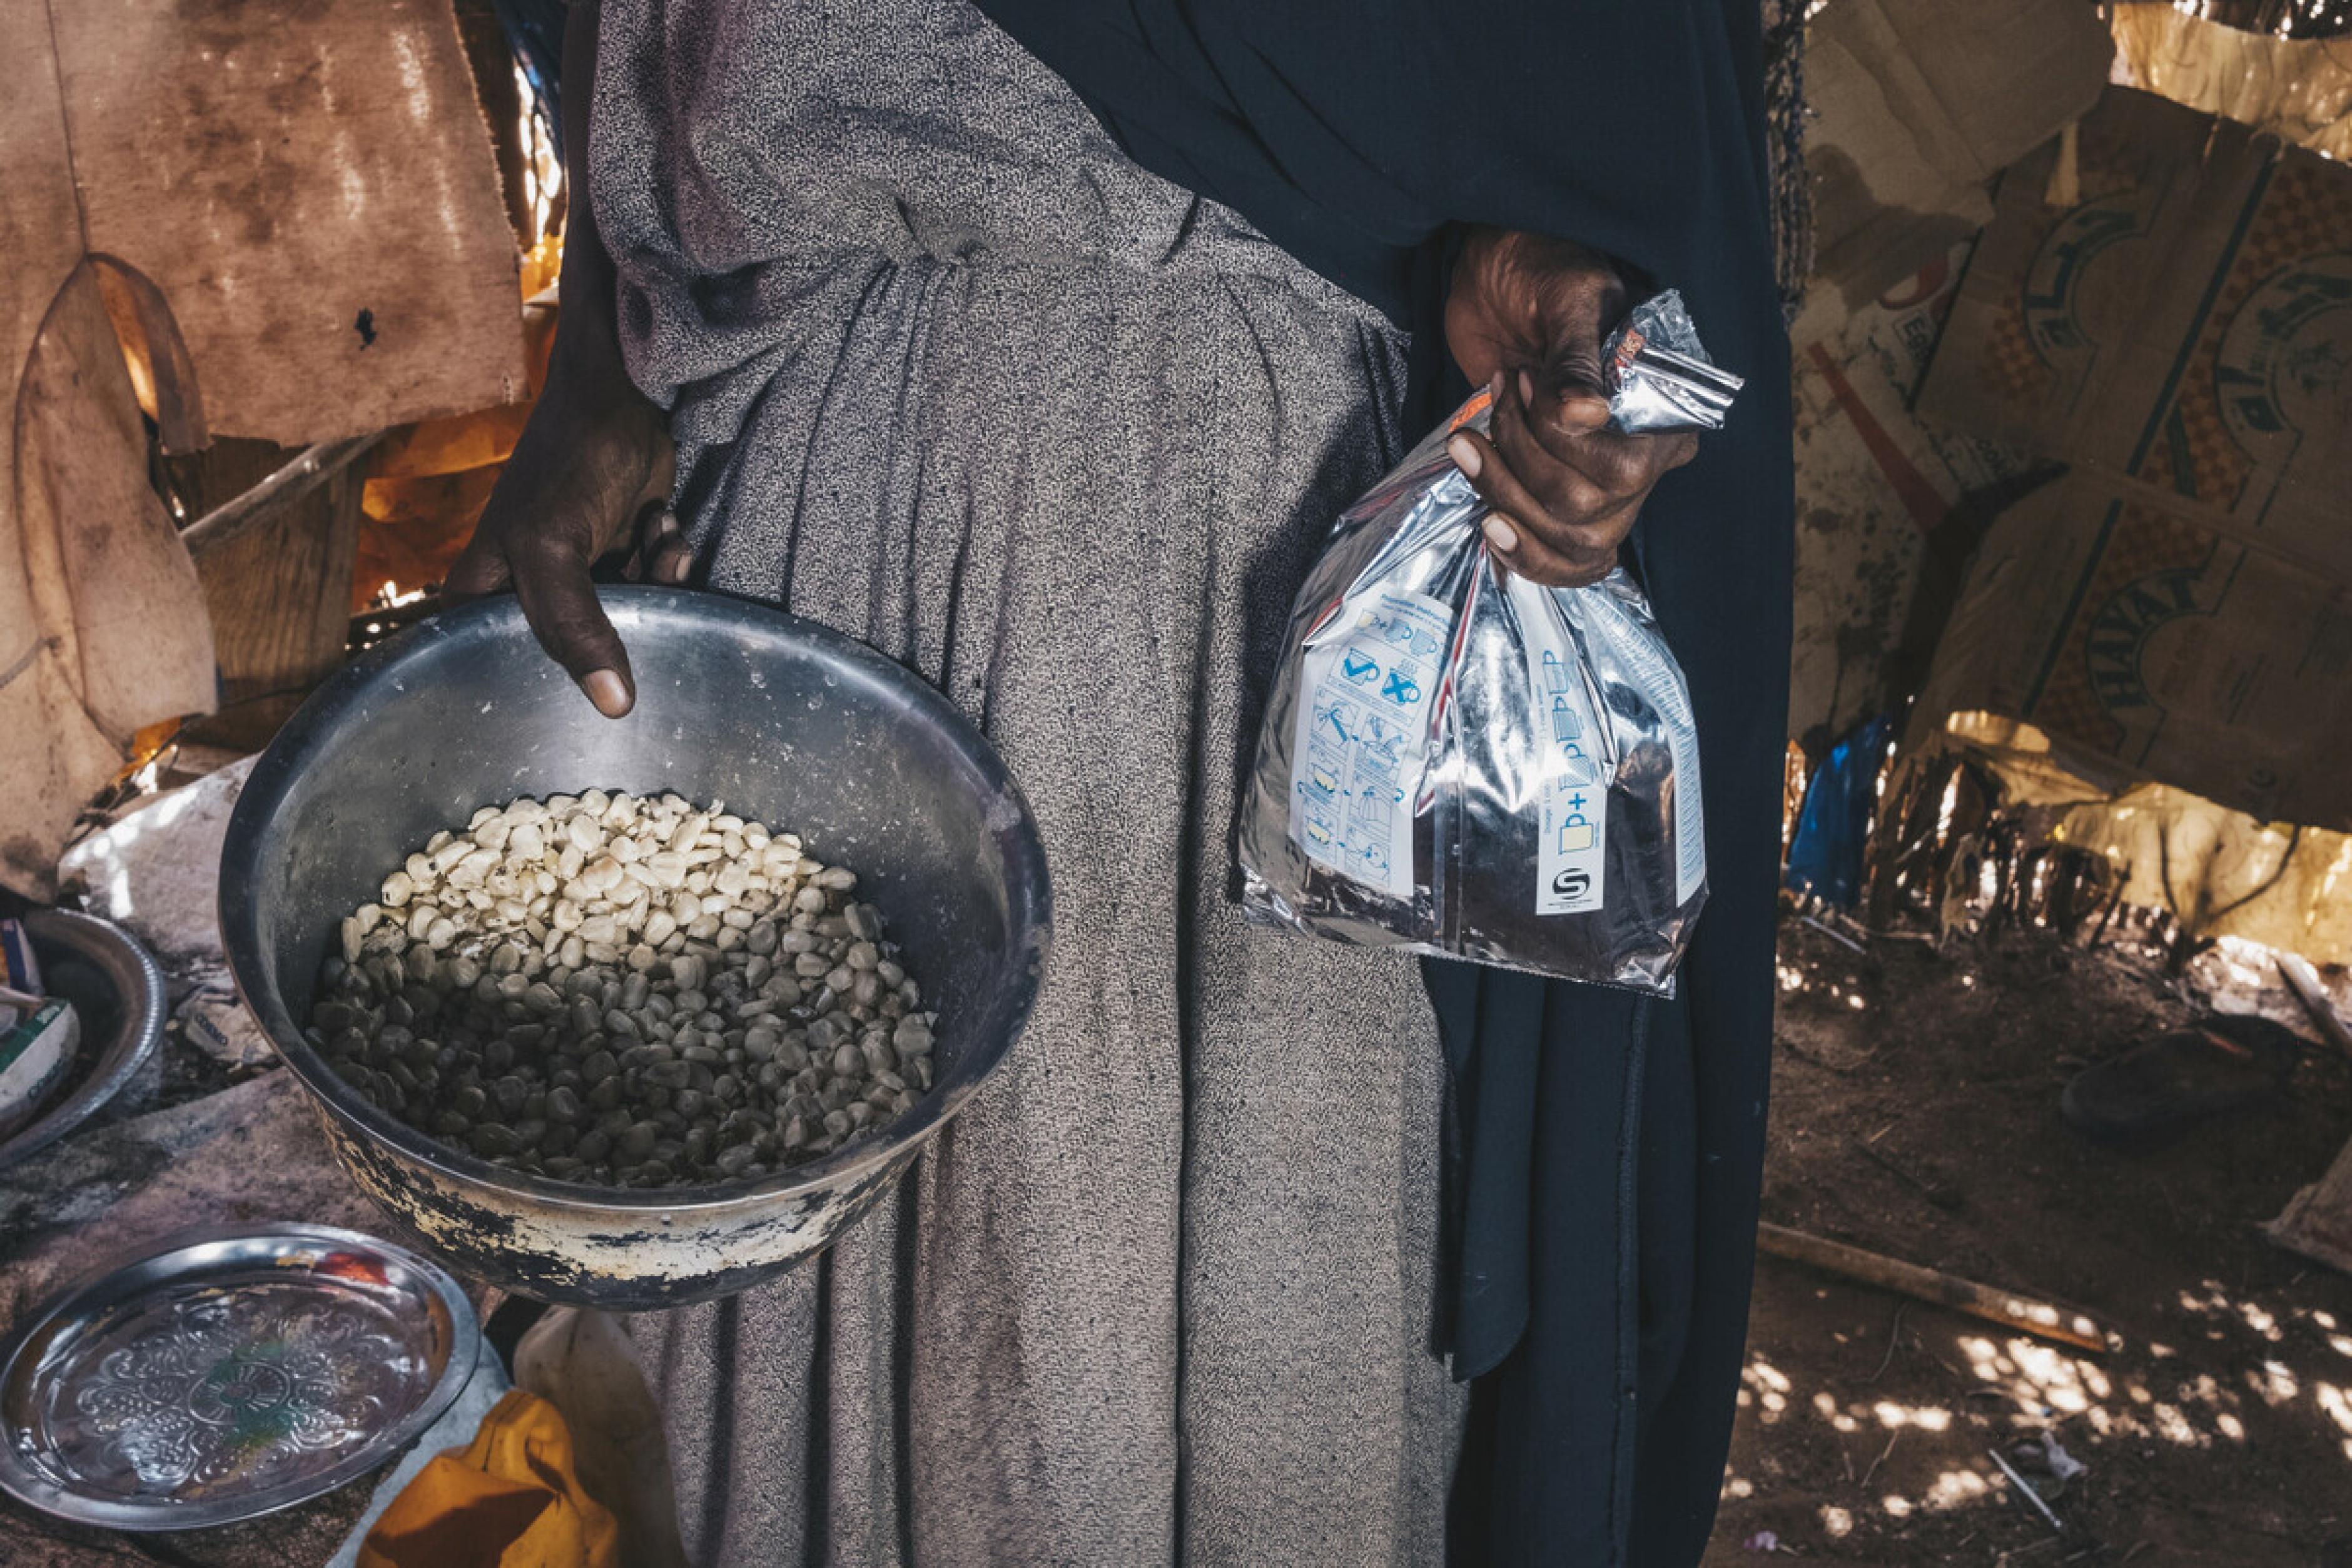 Diyaara* zeigt die Lebensmittel, die sie noch hat, um für ihre Familie zu kochen und ihr verbliebenes Vieh zu füttern. Sie zeigt eine Schüssel, deren Boden bedeckt ist, und einen kleinen Beutel, der etwa halbvoll ist. Sie lebt in Wajir, Kenia, wo derzeit eine Hungerkrise herrscht.